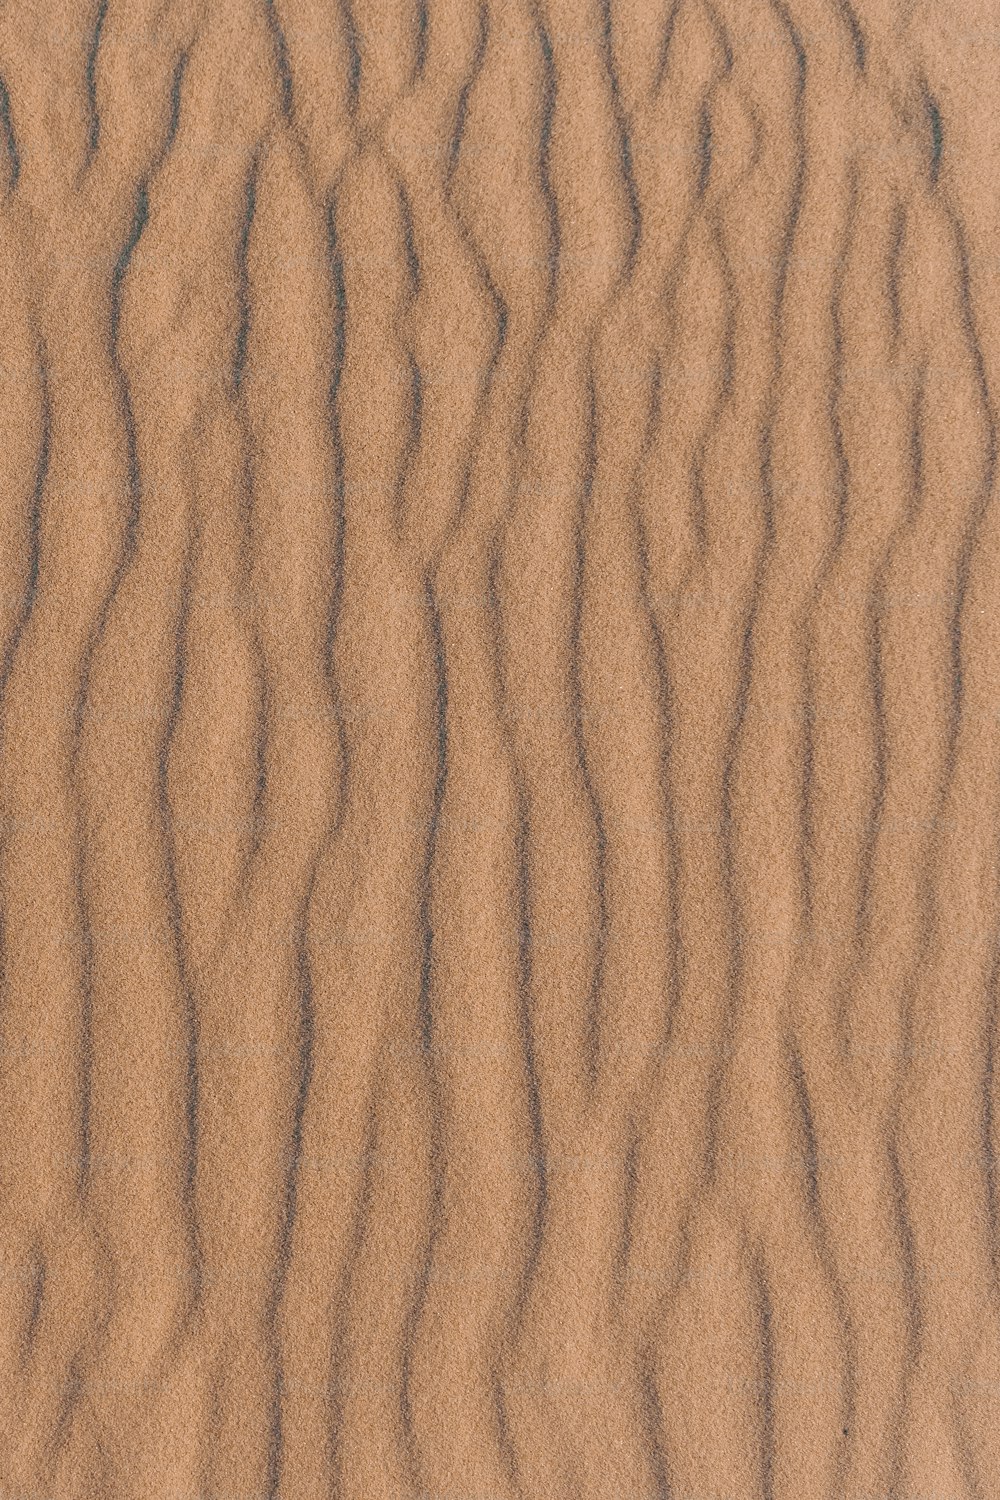 Gros plan d’une dune de sable aux lignes ondulées